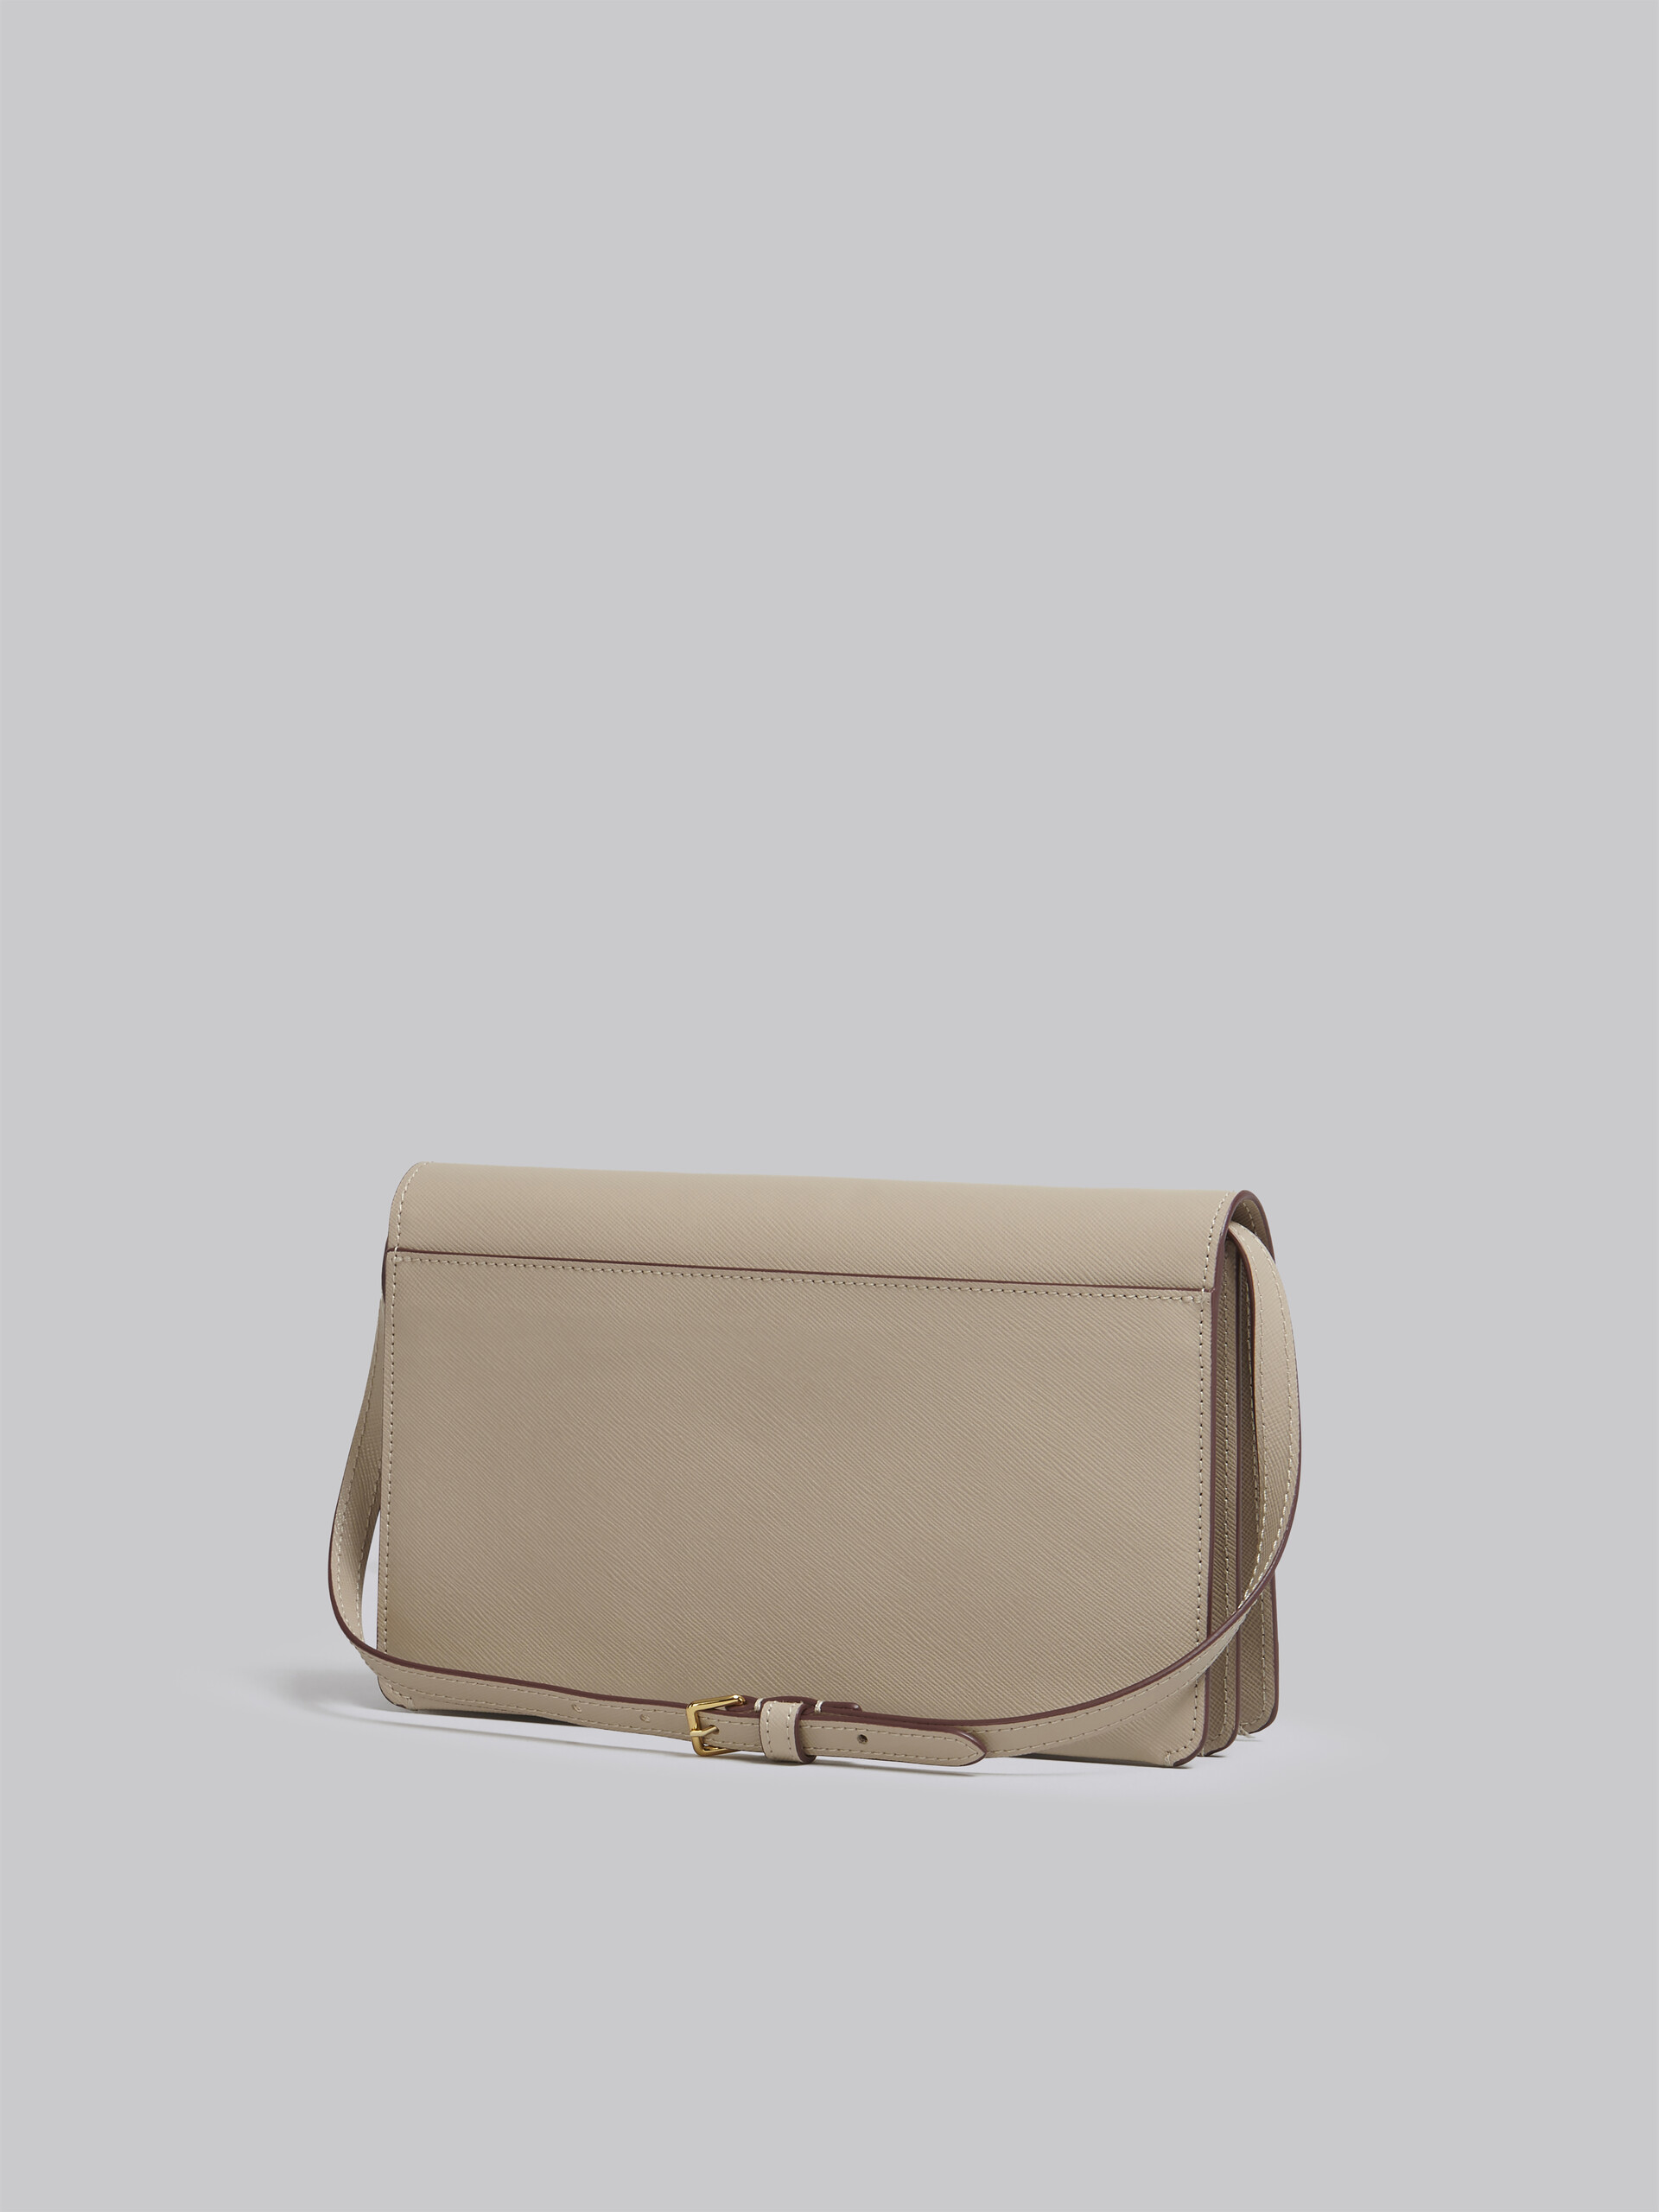 TRUNK clutch bag in beige saffiano leather